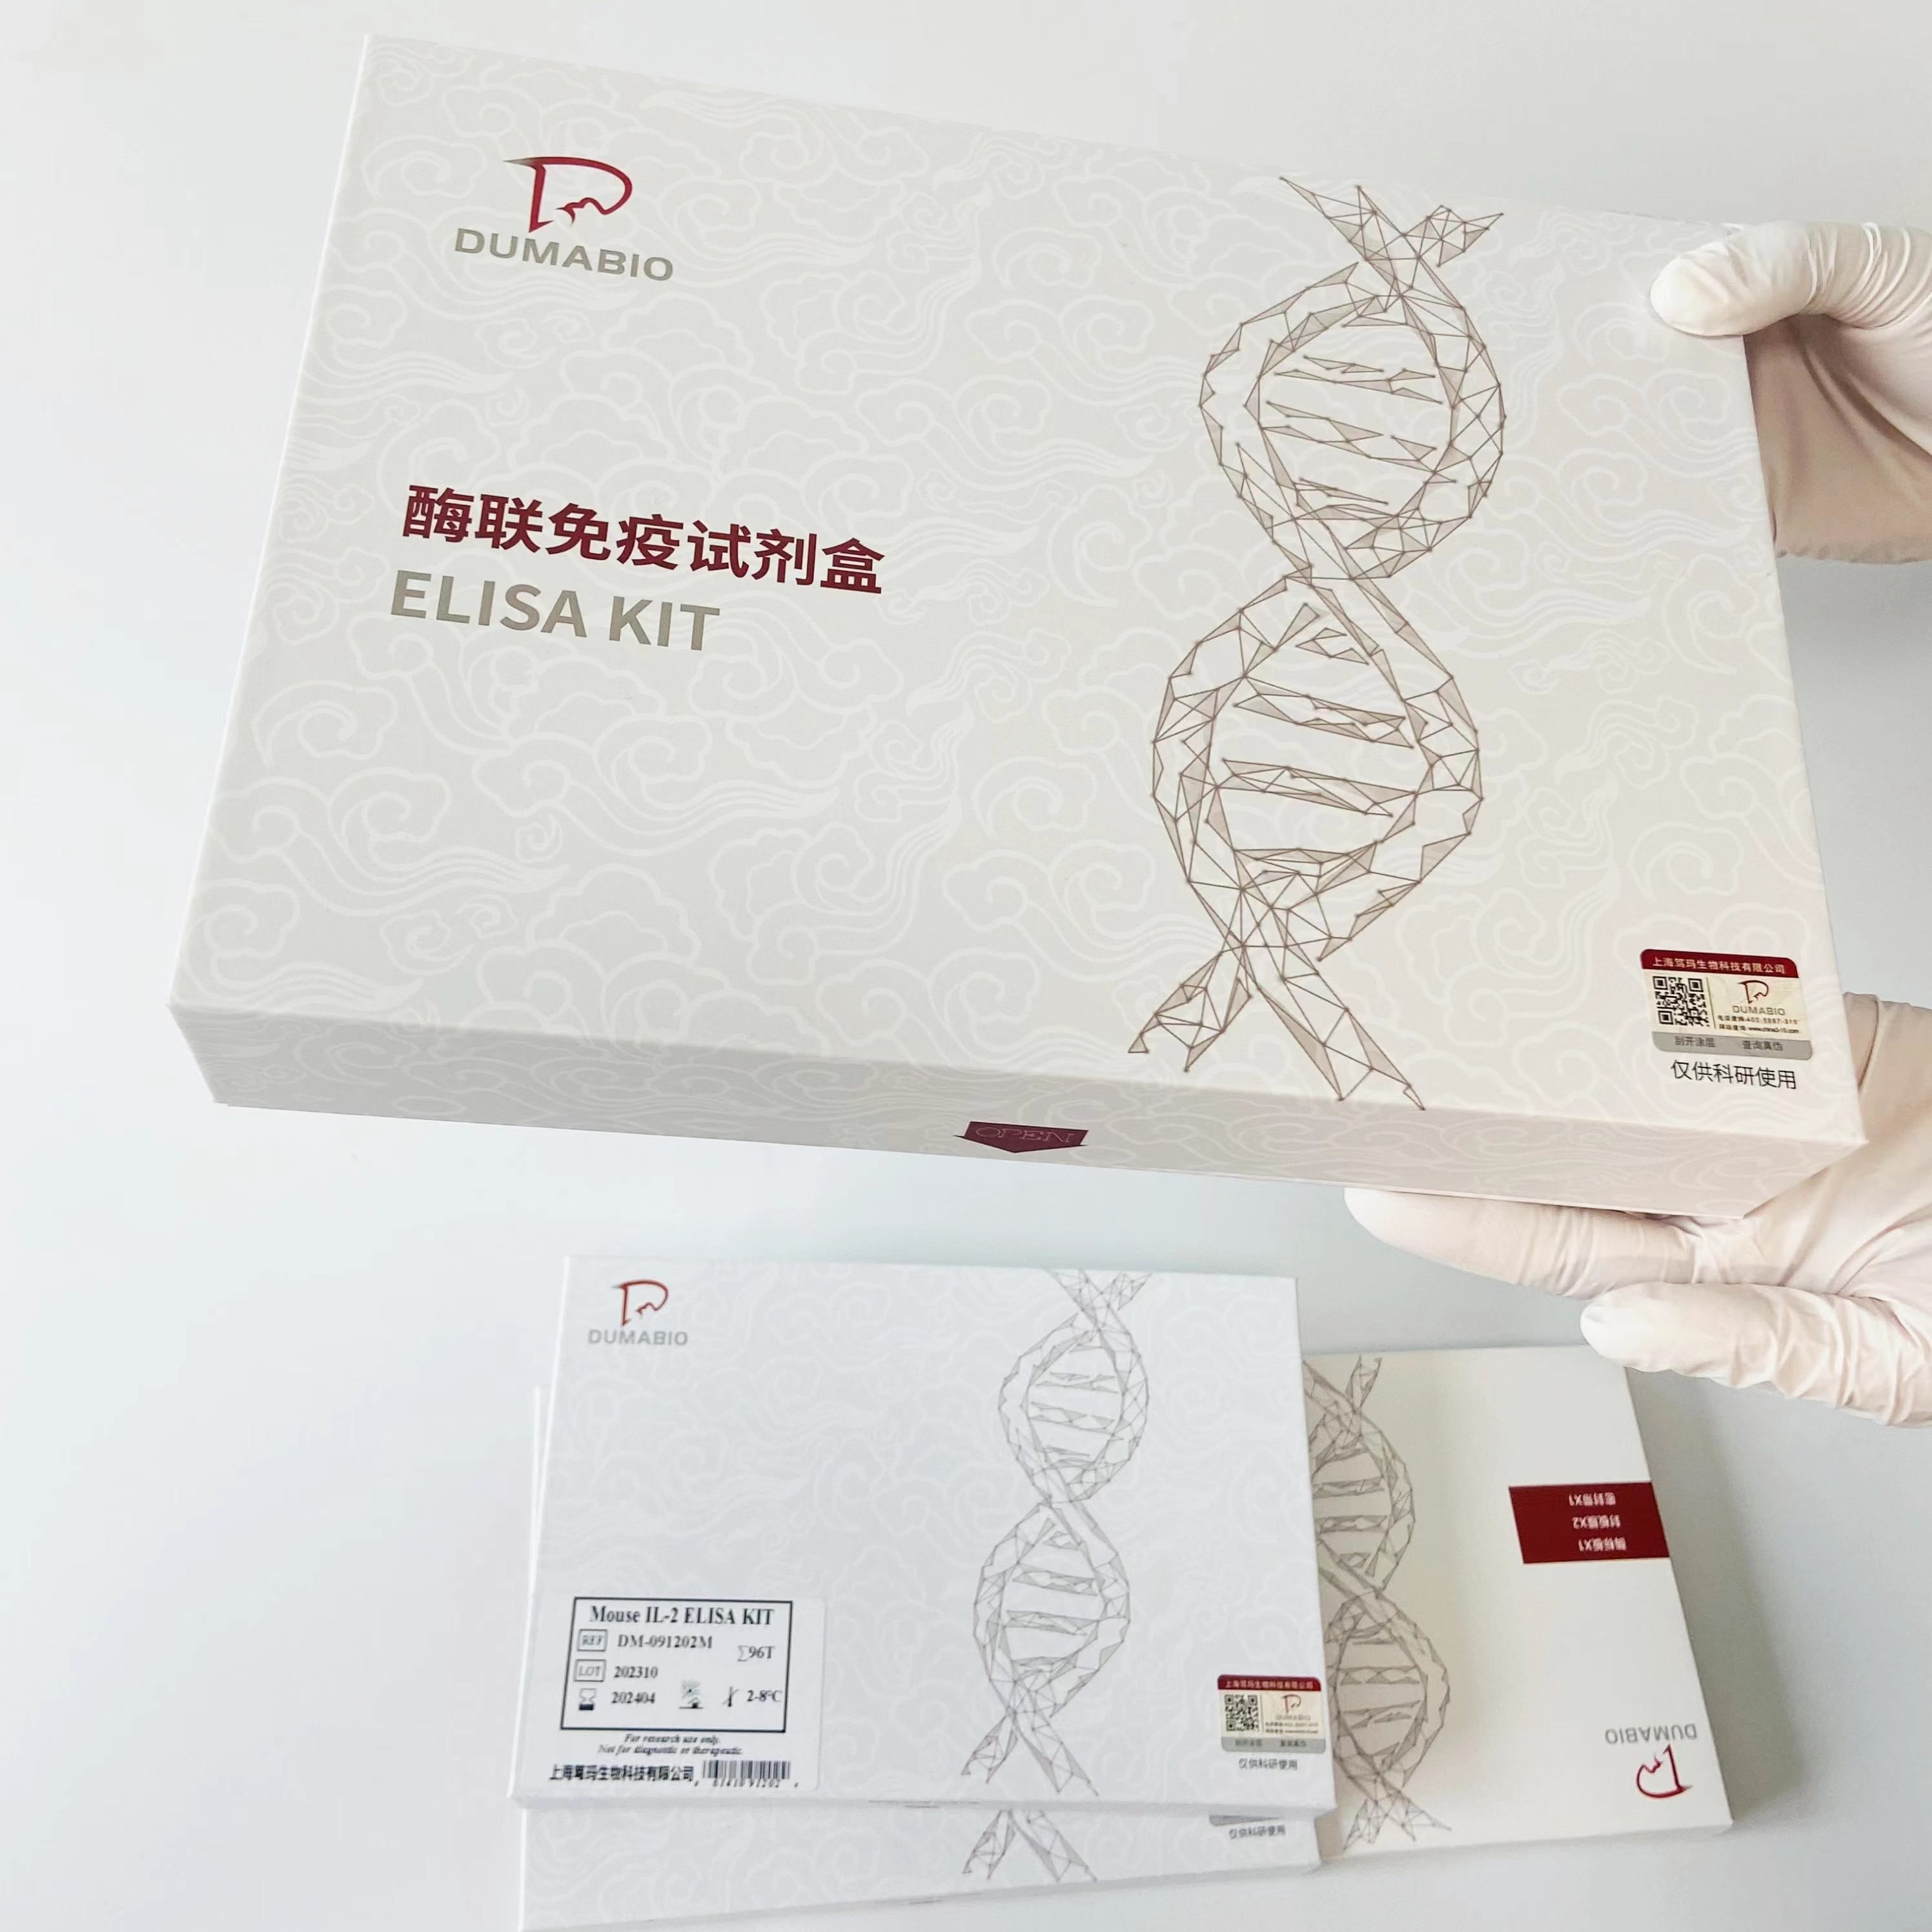 人胱天蛋白酶激活的脱氧核糖核酸酶(CAD)ELISA试剂盒